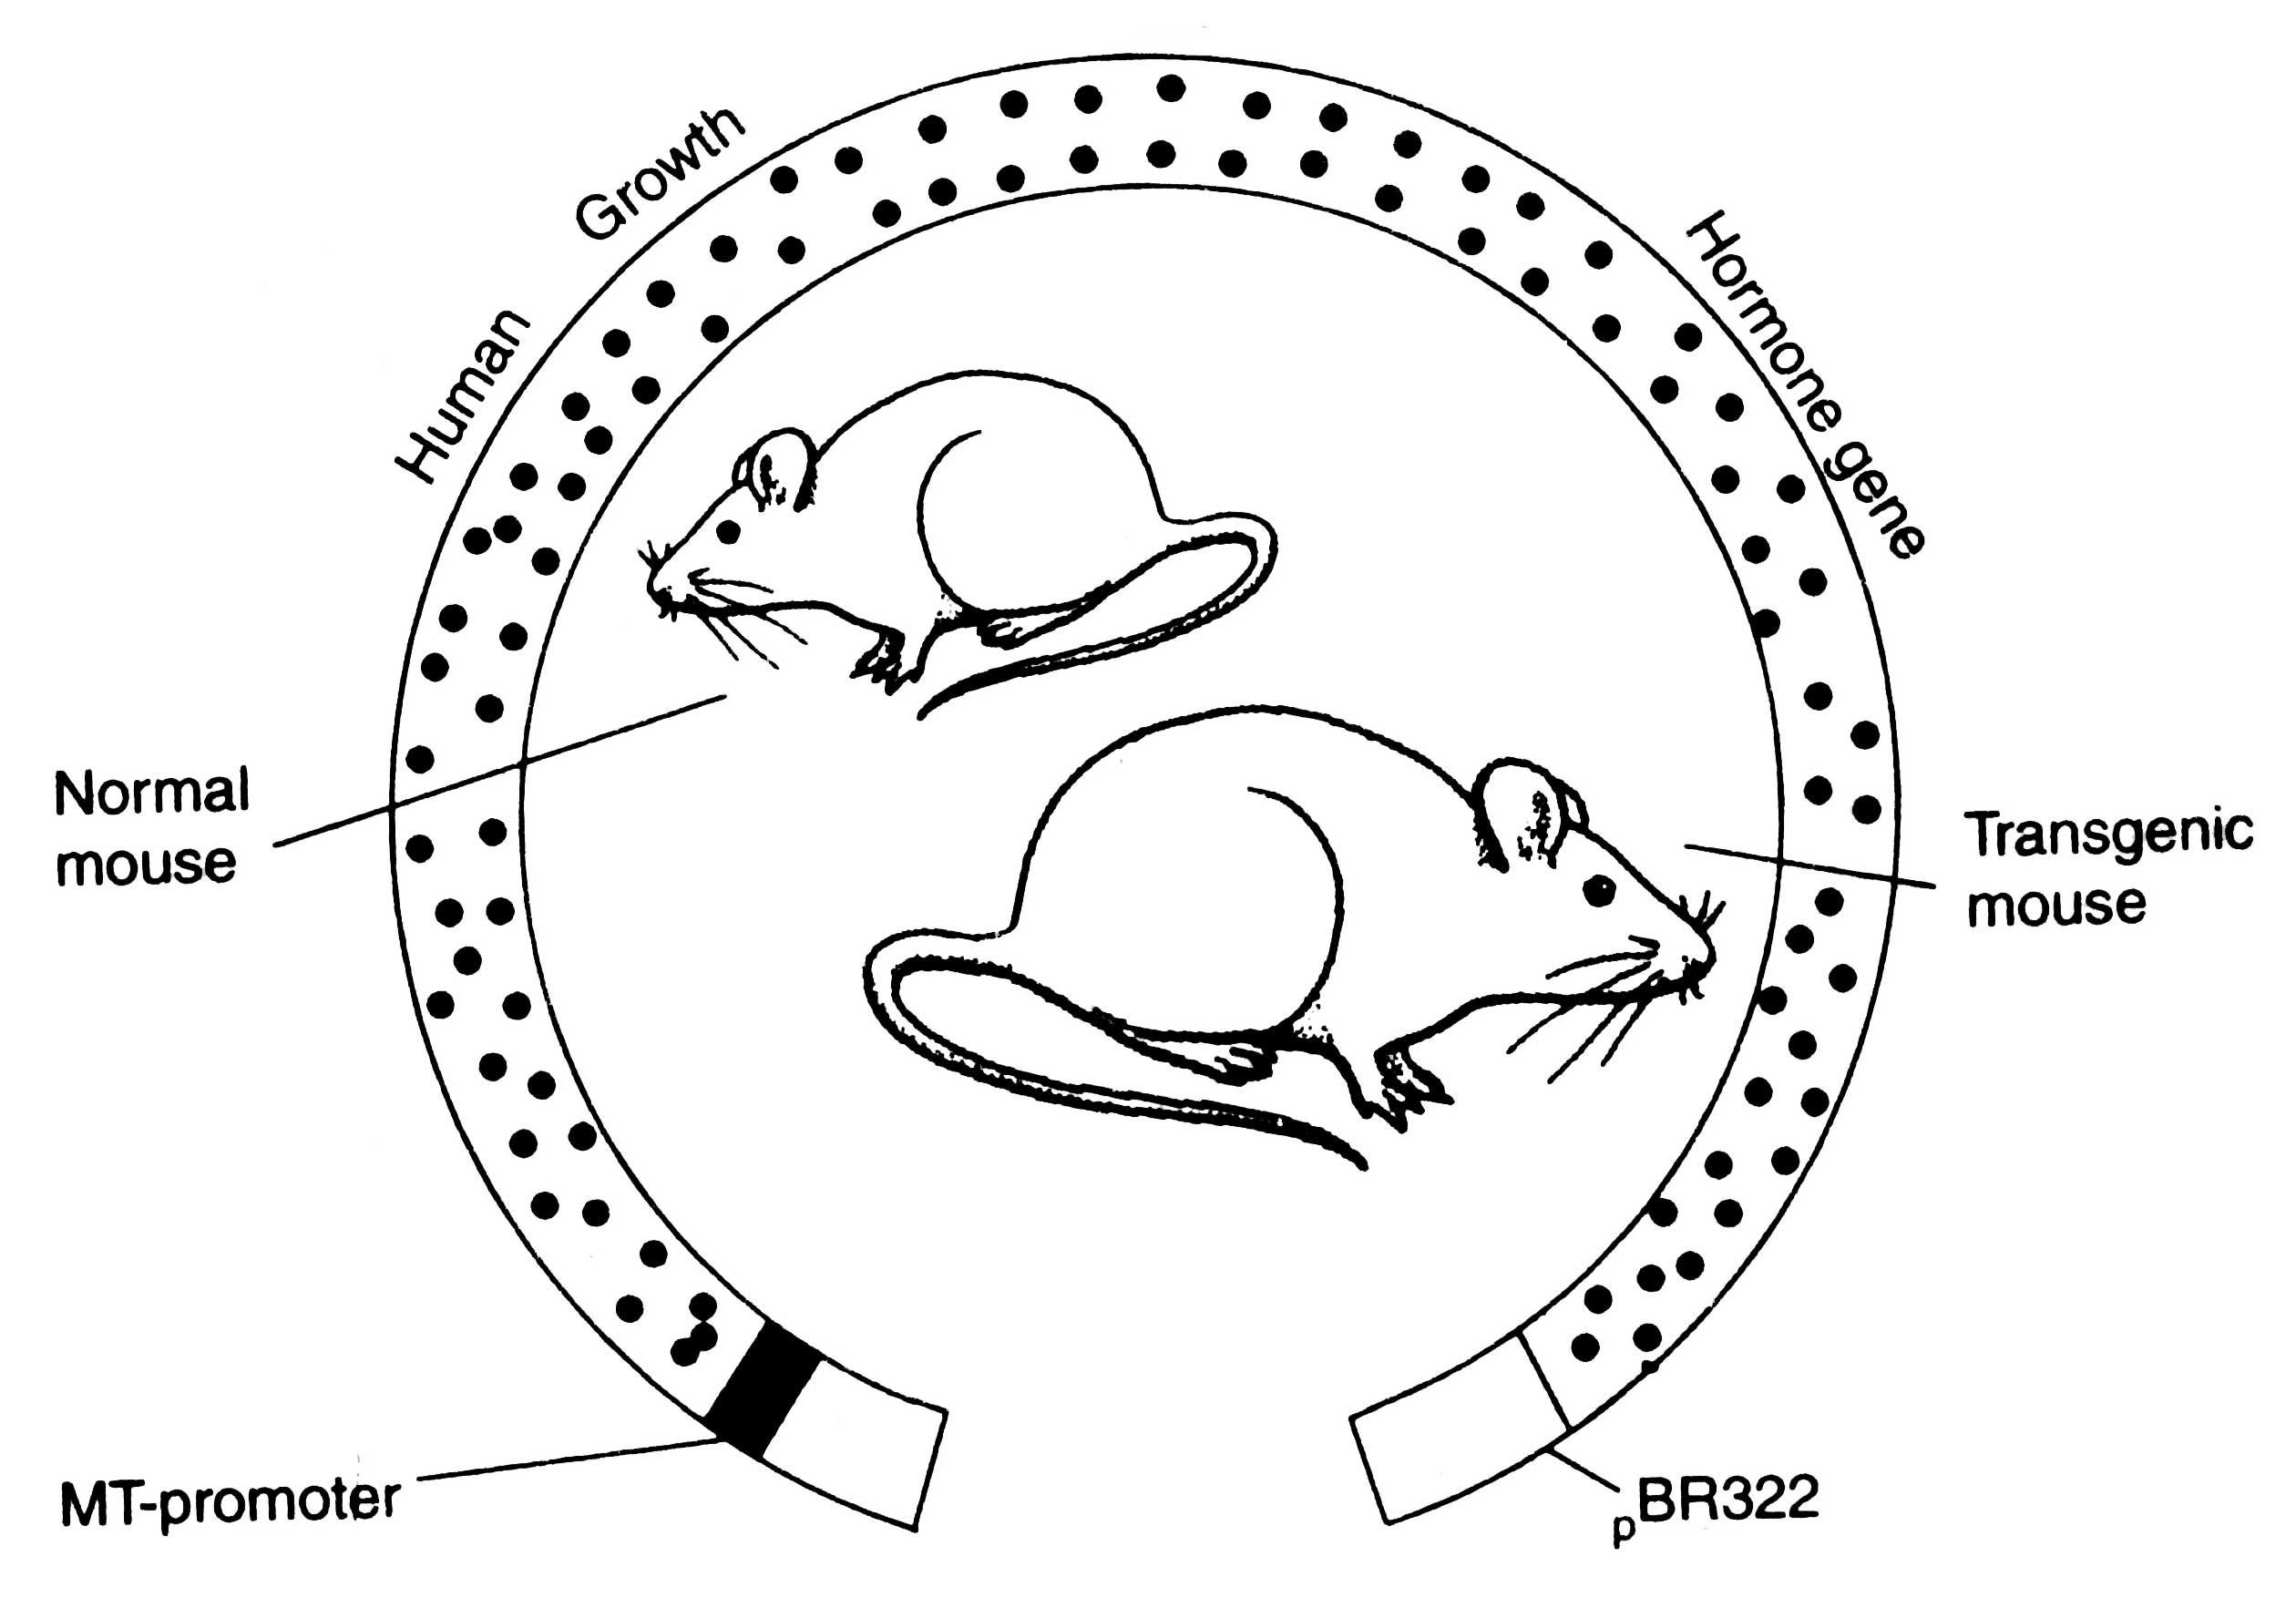  transzgenikus egerek előállítása; MT, metionin